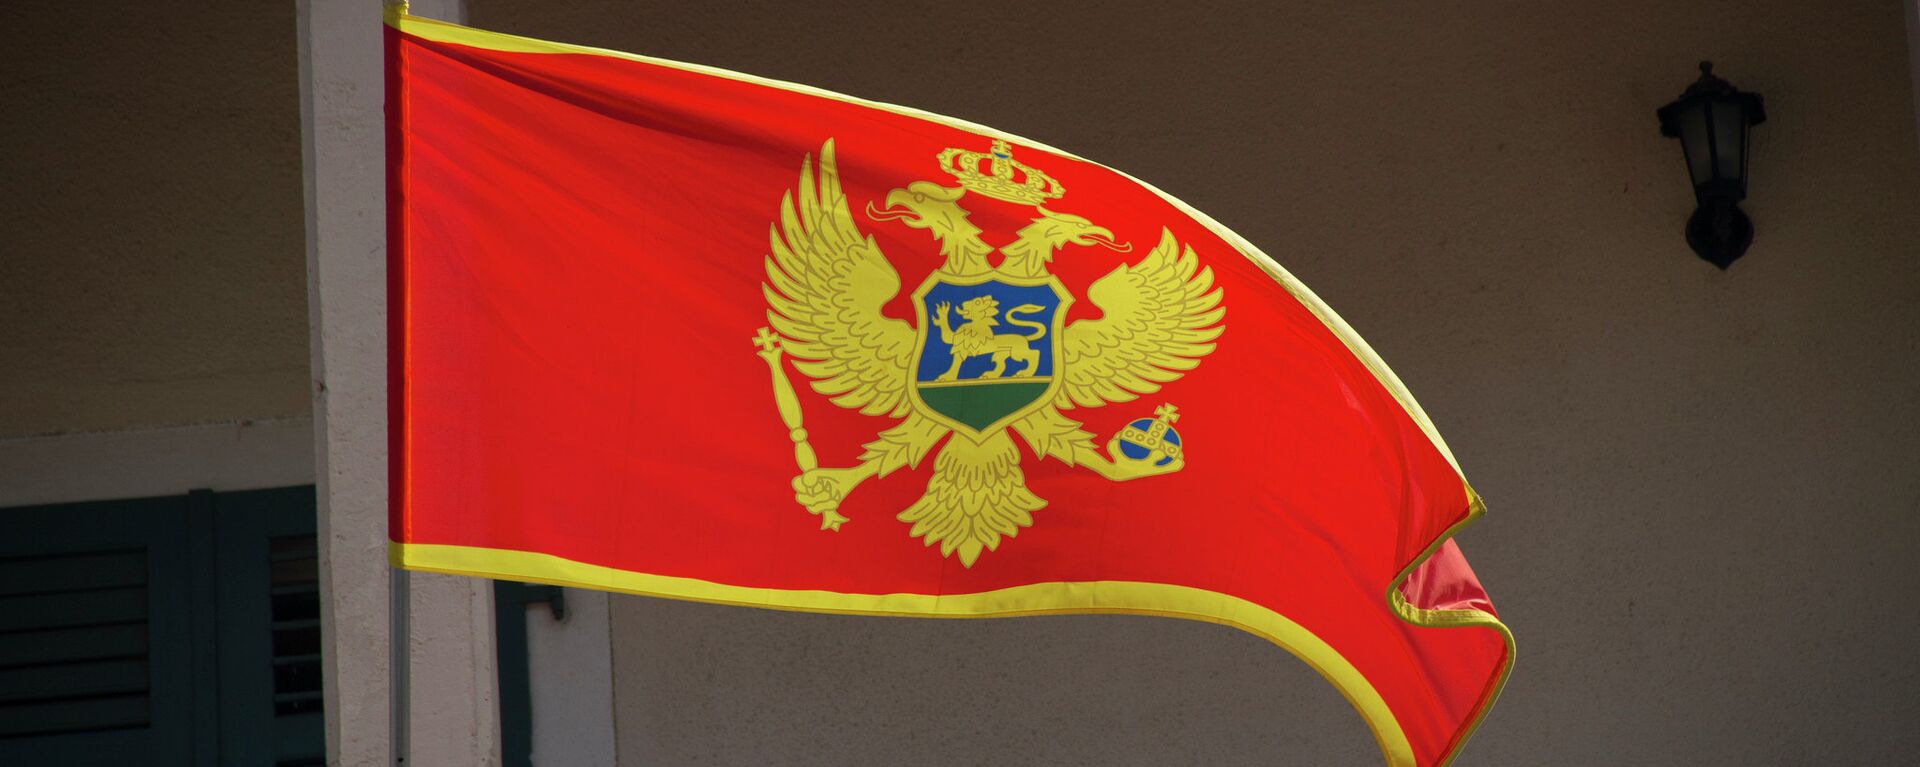 Црногорска застава - Sputnik Србија, 1920, 29.11.2021